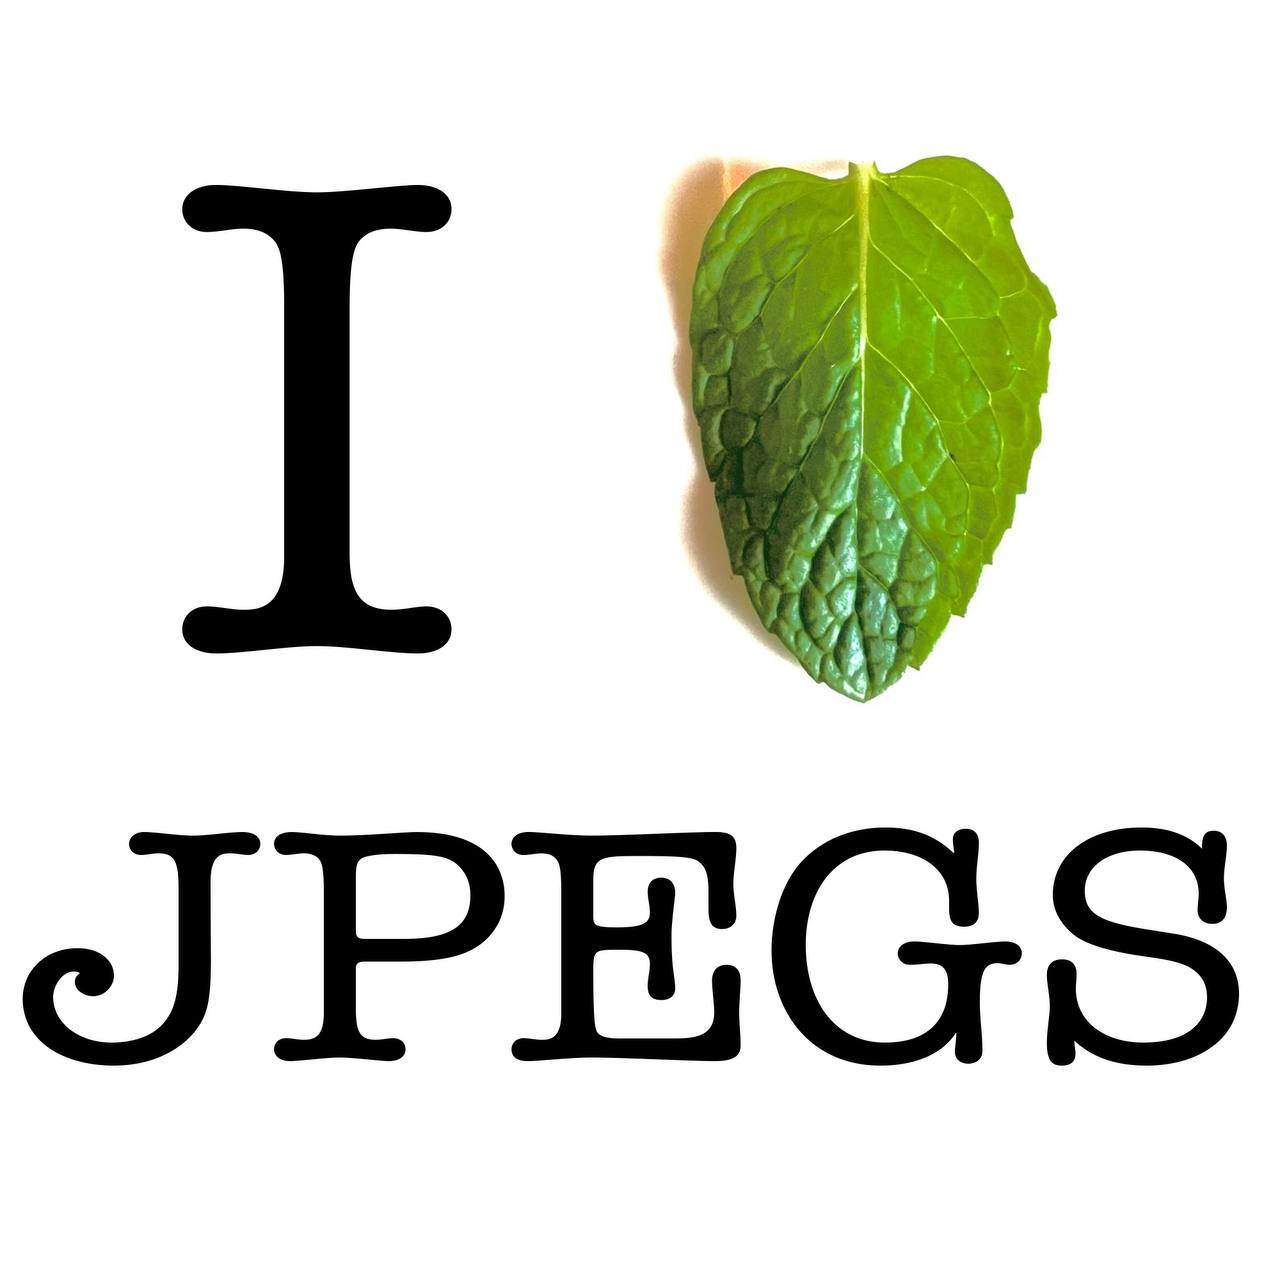 I LOVE JPEGS/I MINT JPEGS